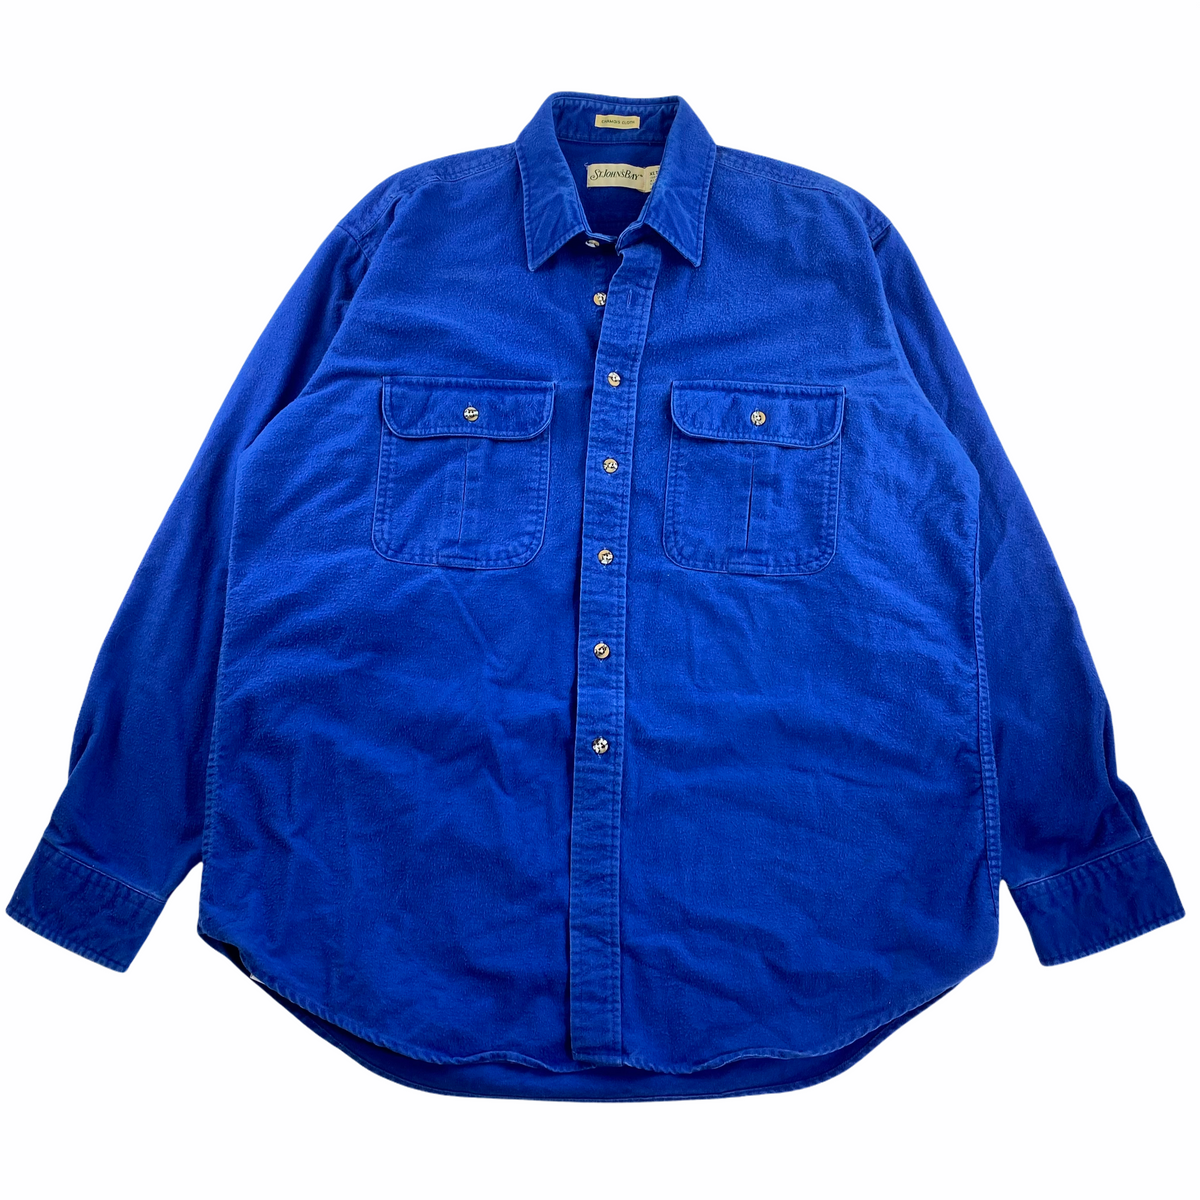 St. john's bay chamois shirt XLT – Vintage Sponsor